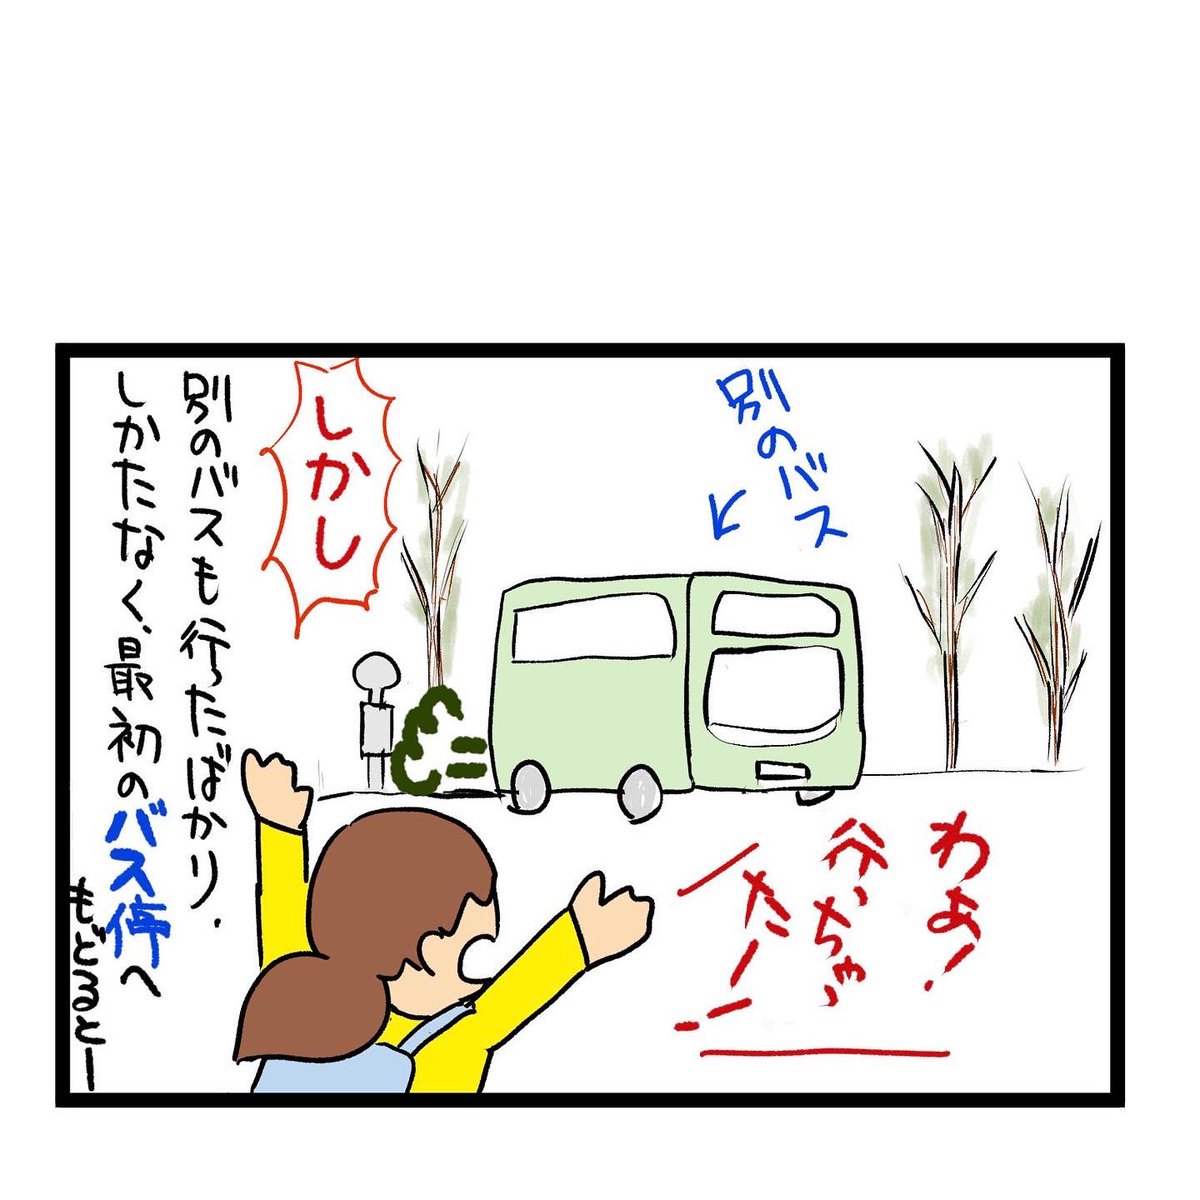 #四コマ漫画
#休日出勤
バスに乗れません 